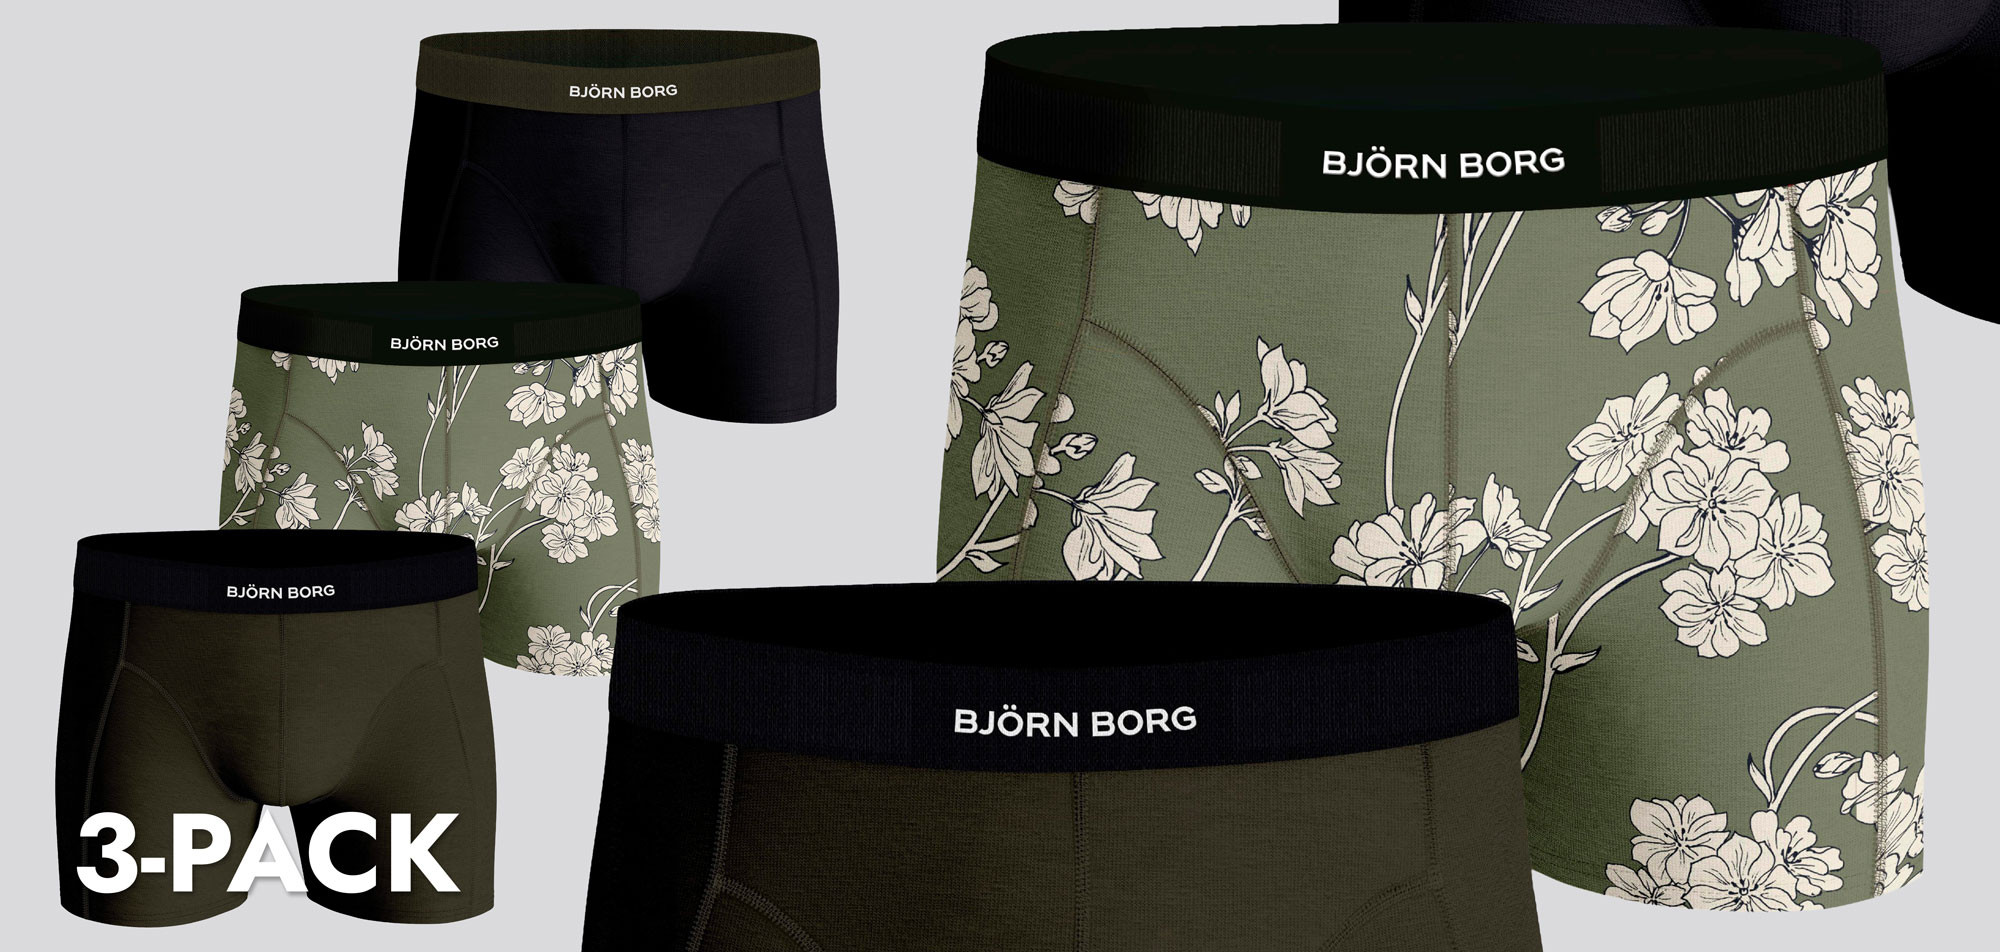 Bjorn Borg Boxershort 3-Pack 724 Premium Cotton MP002,